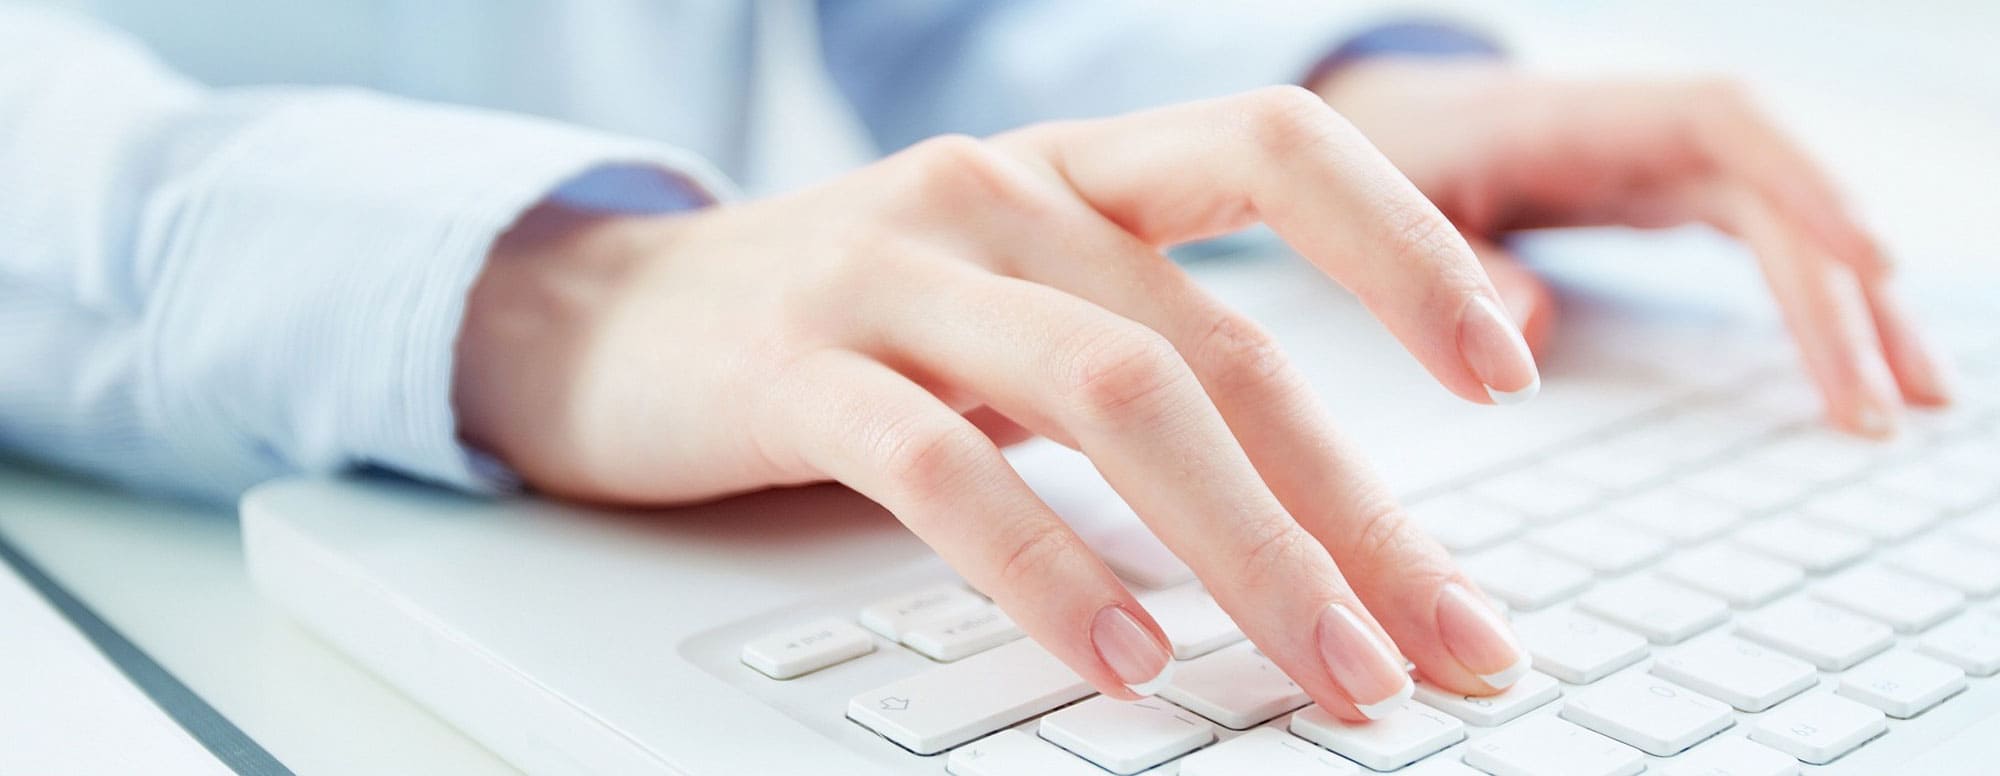 mains de femme sur un clavier d'ordinateur